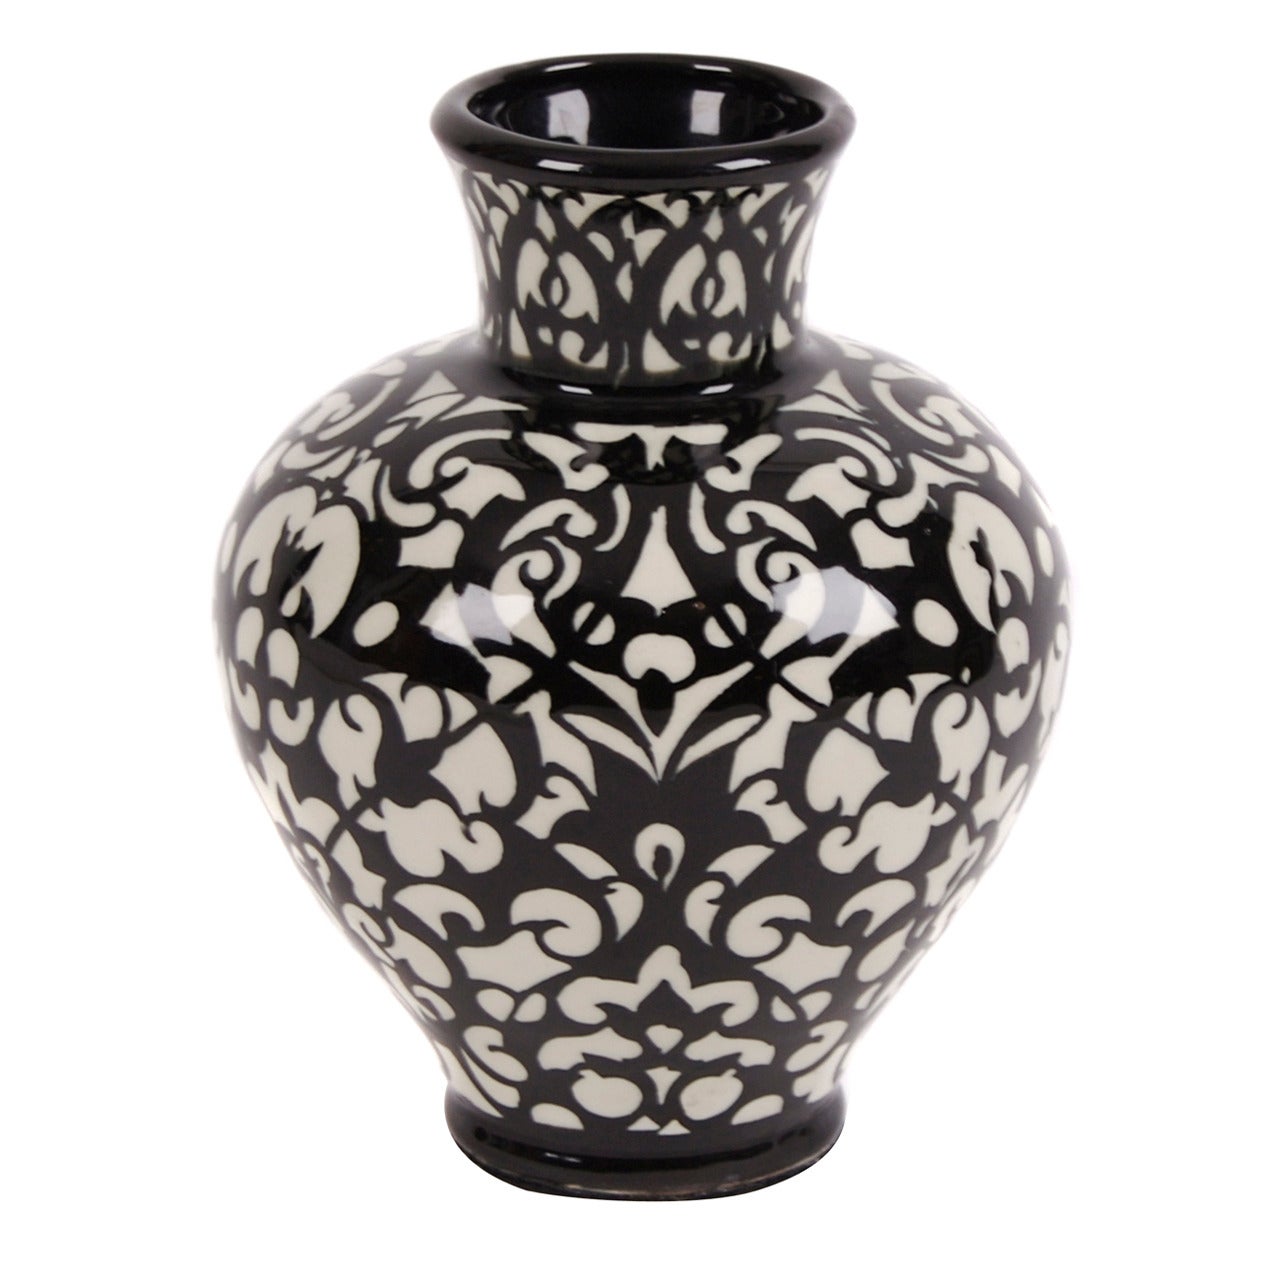 German Art Deco Period Ceramic Vase by Velten Vordamm, circa 1920s